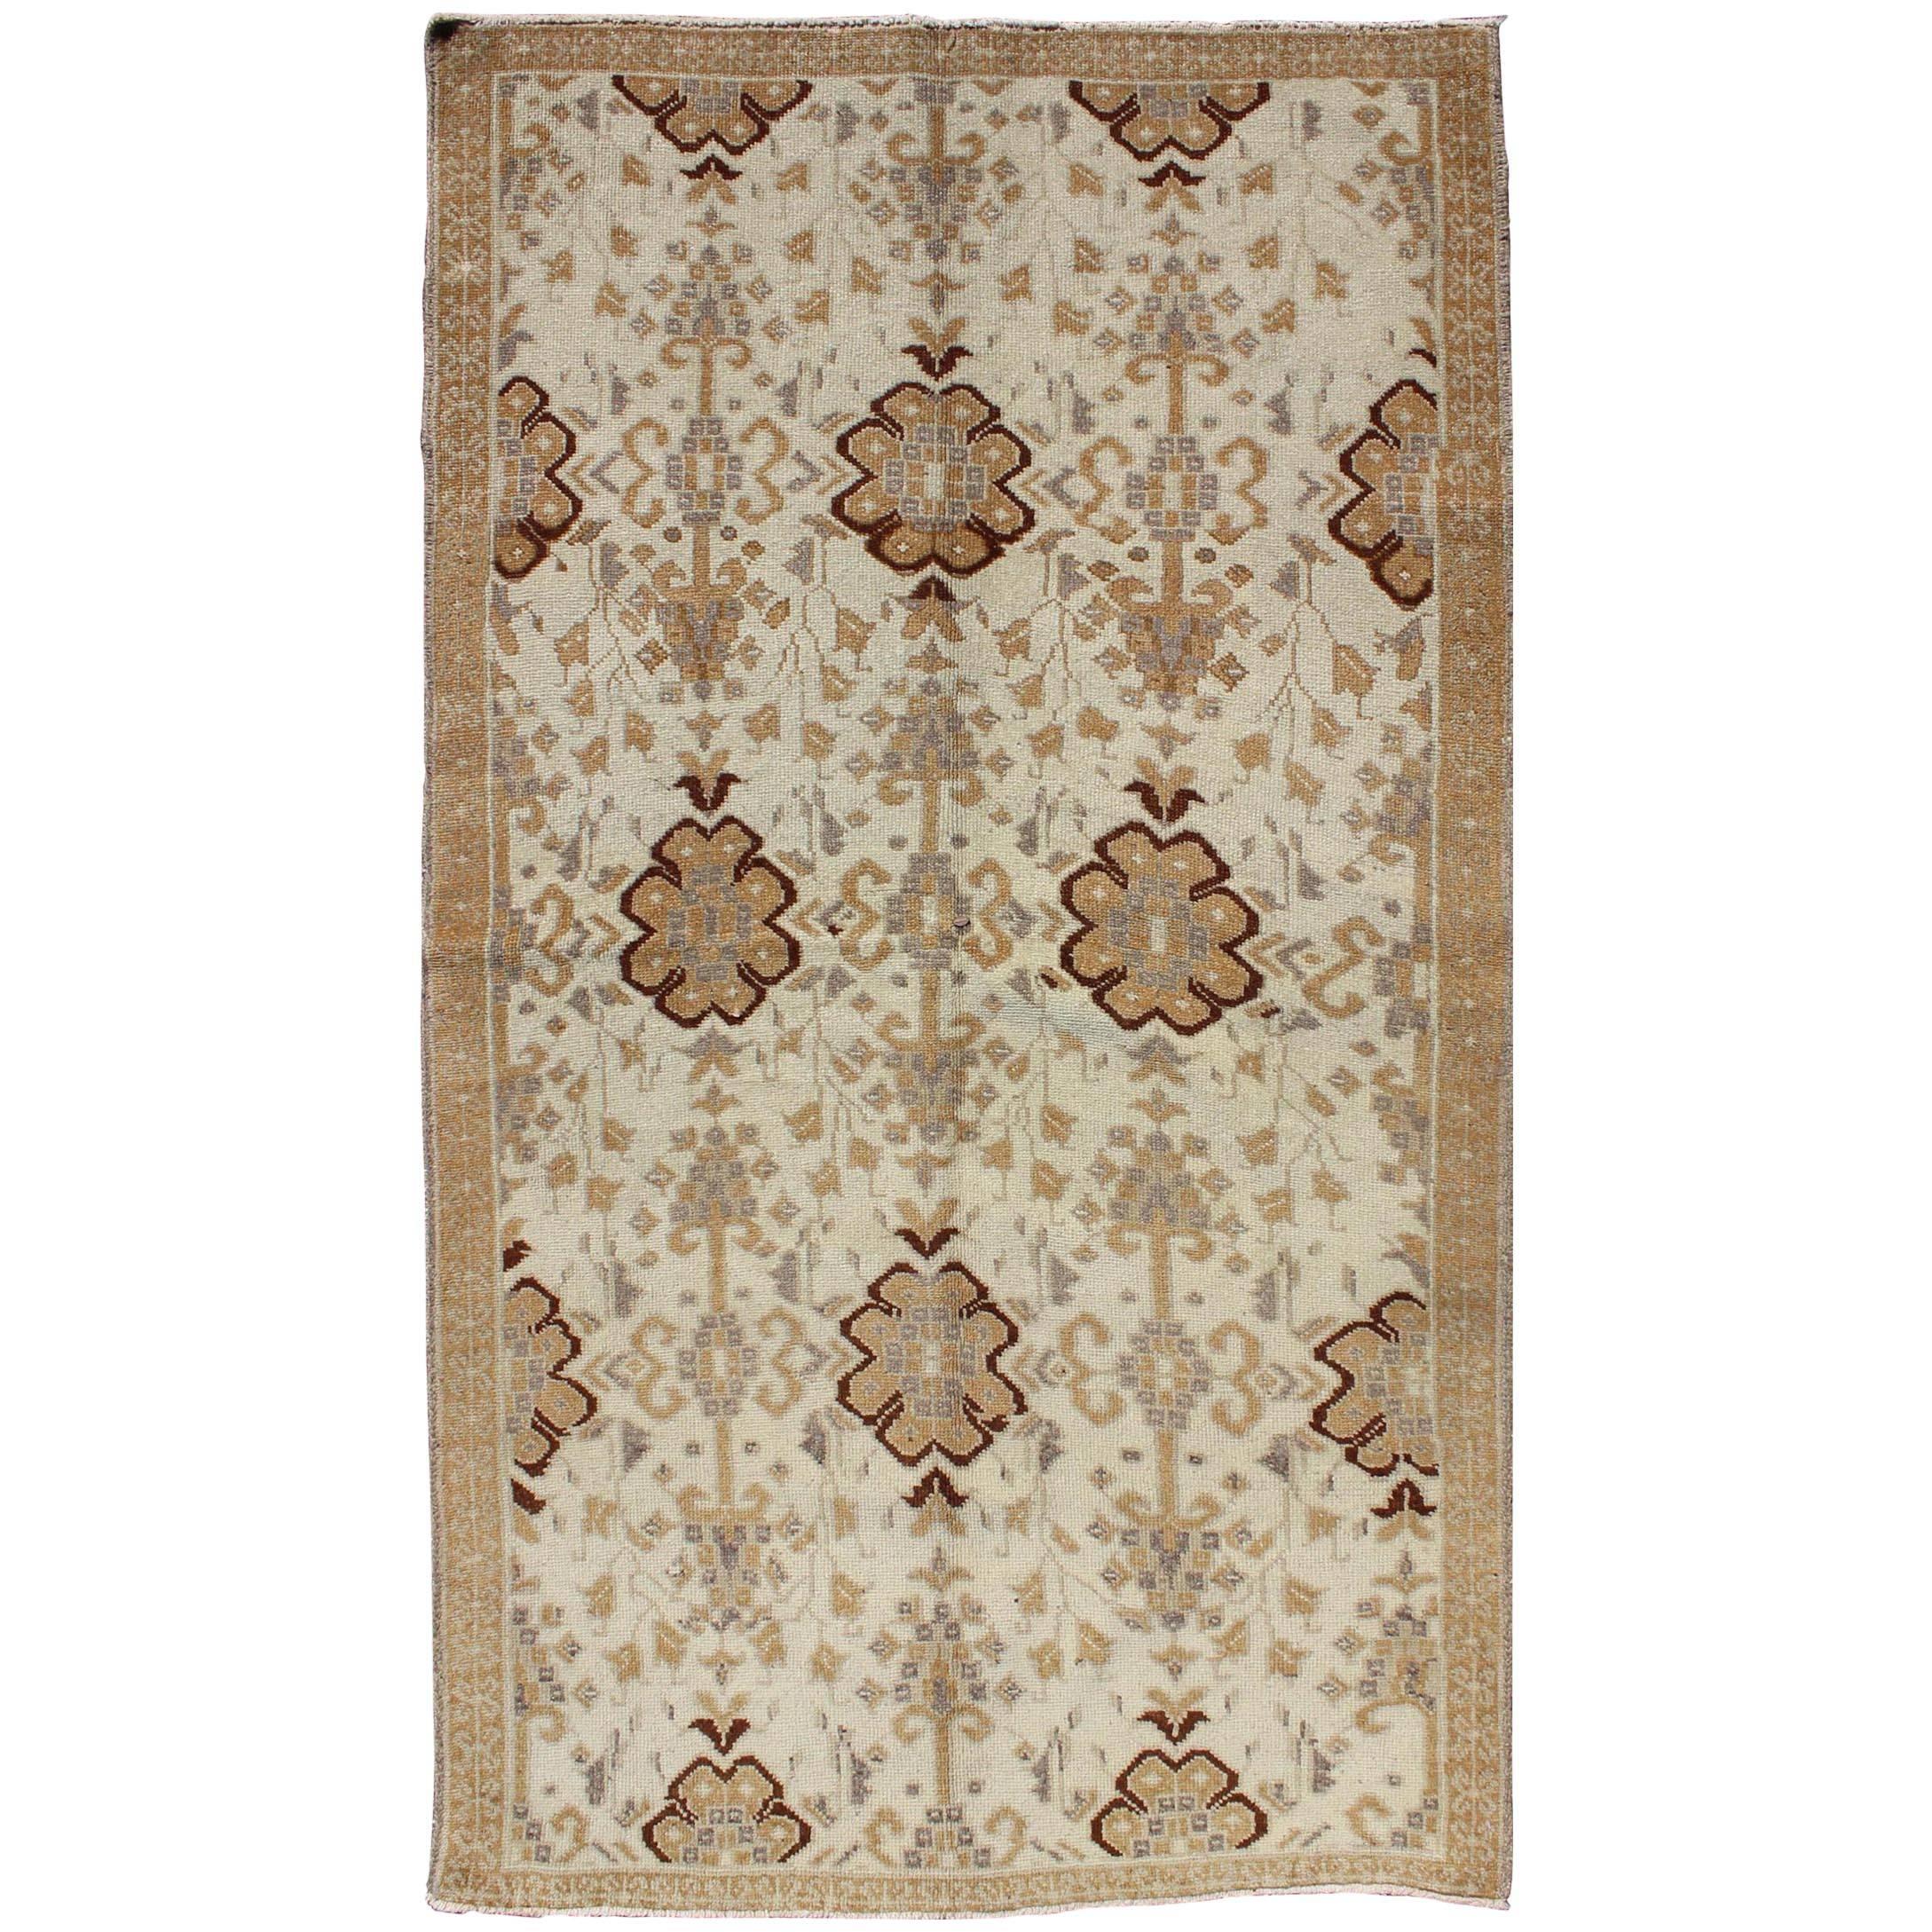 Tapis turc Oushak vintage à motifs floraux verticals sur toute sa surface, couleur crème, brun clair et gris